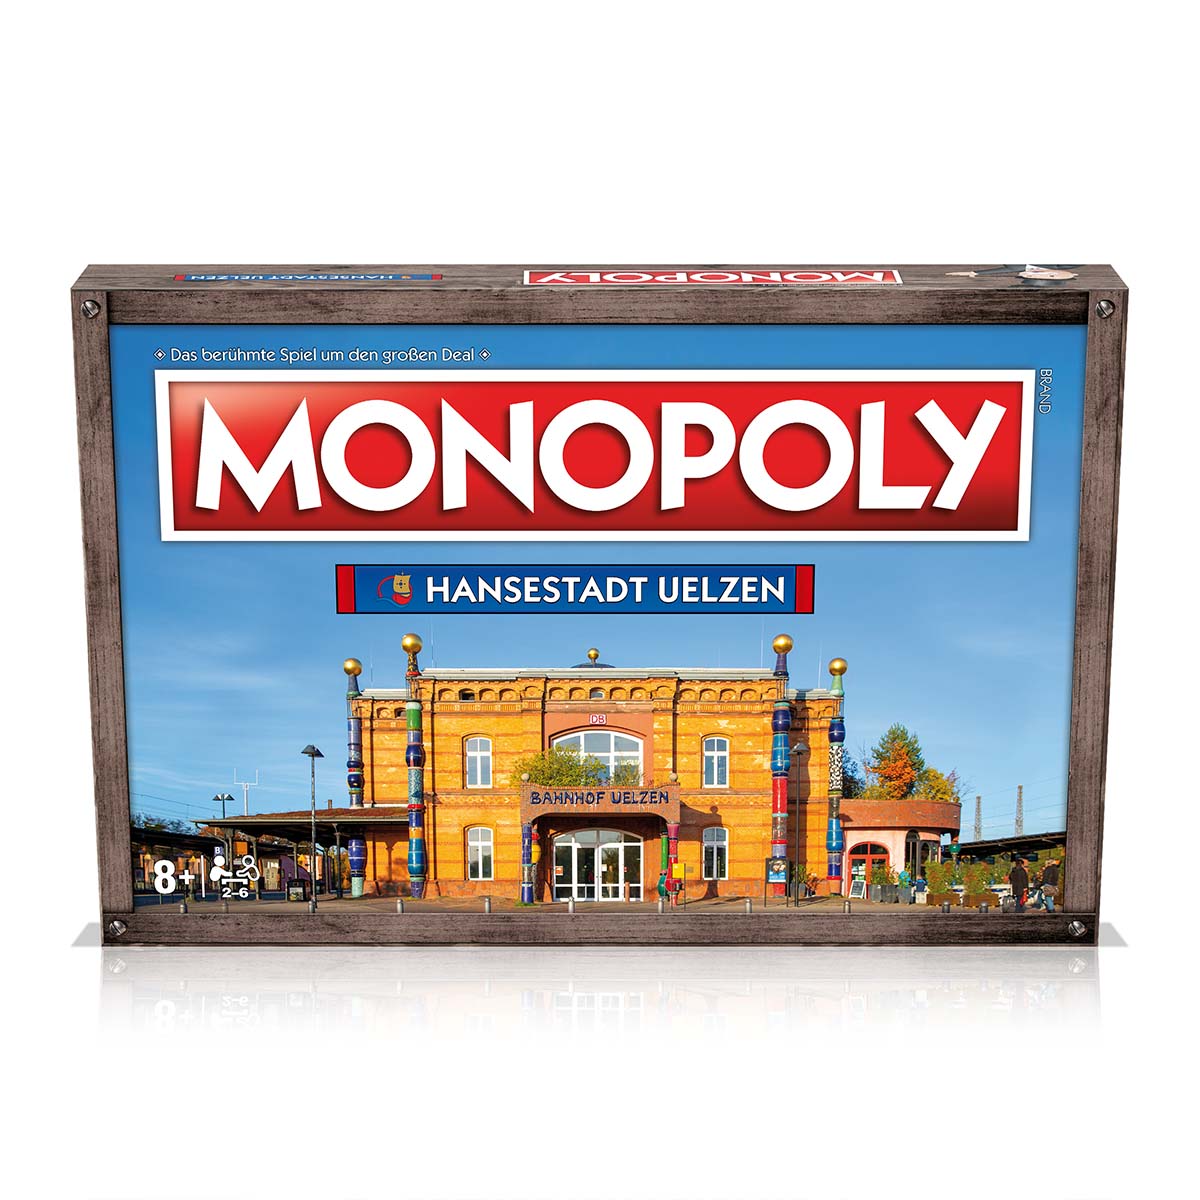 Monopoly - Hansestadt Uelzen